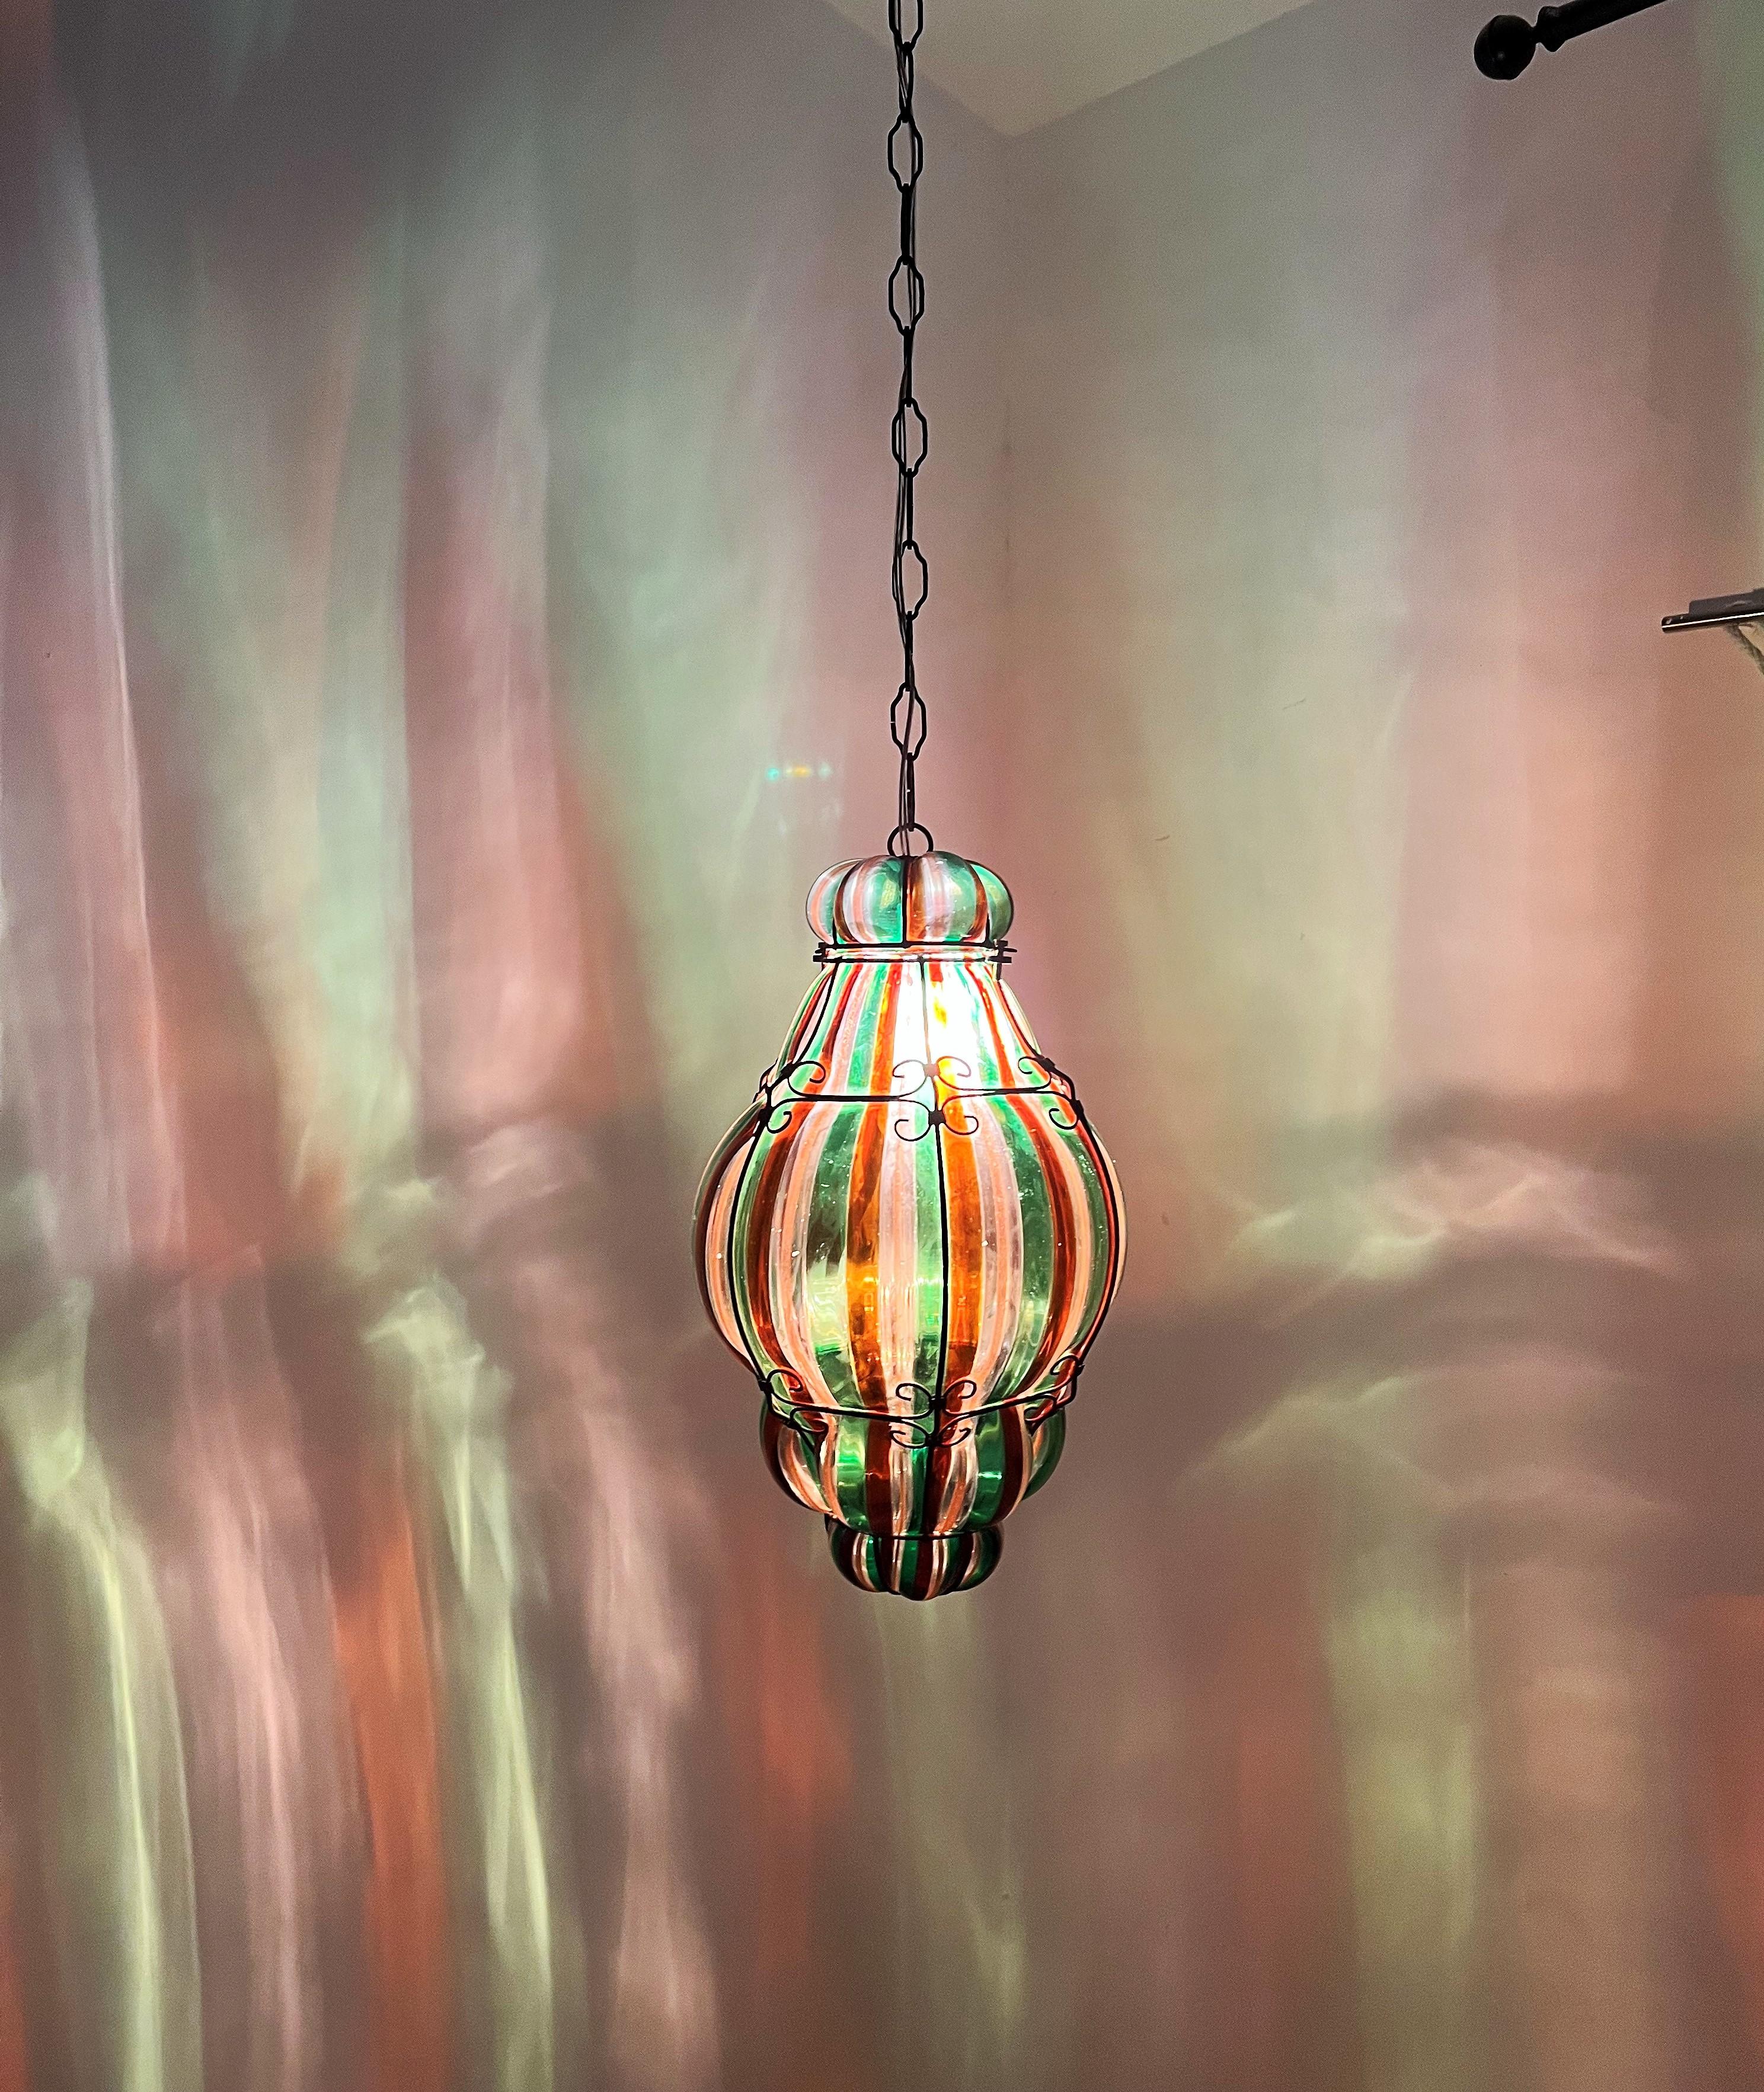 Mid-20th Century 1940s Venini Lantern in Murano Glass by Fulvio Bianconi For Sale